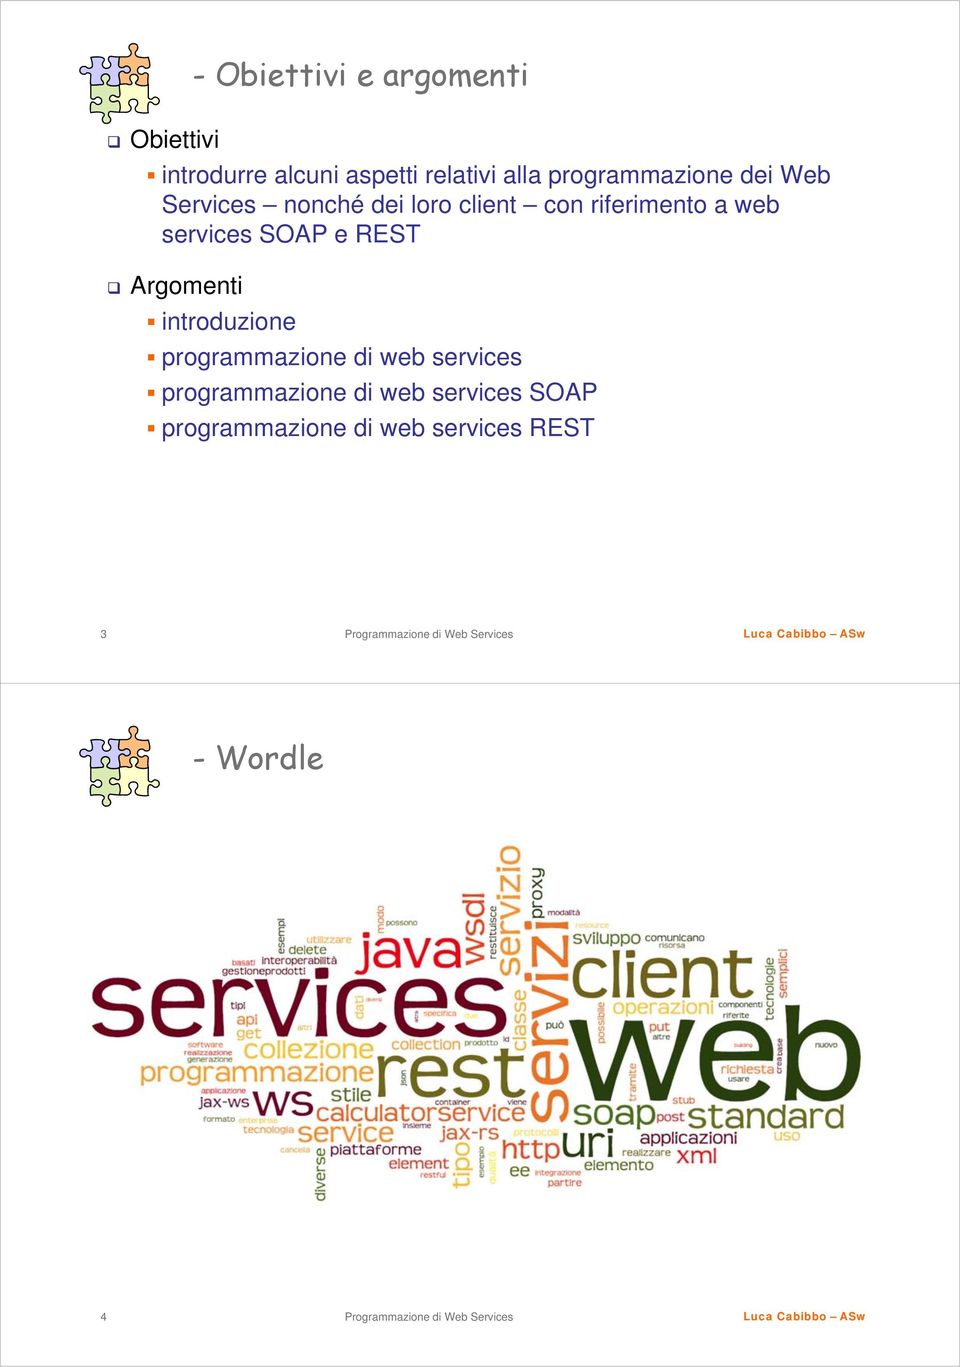 services SOAP e REST Argomenti introduzione programmazione di web services